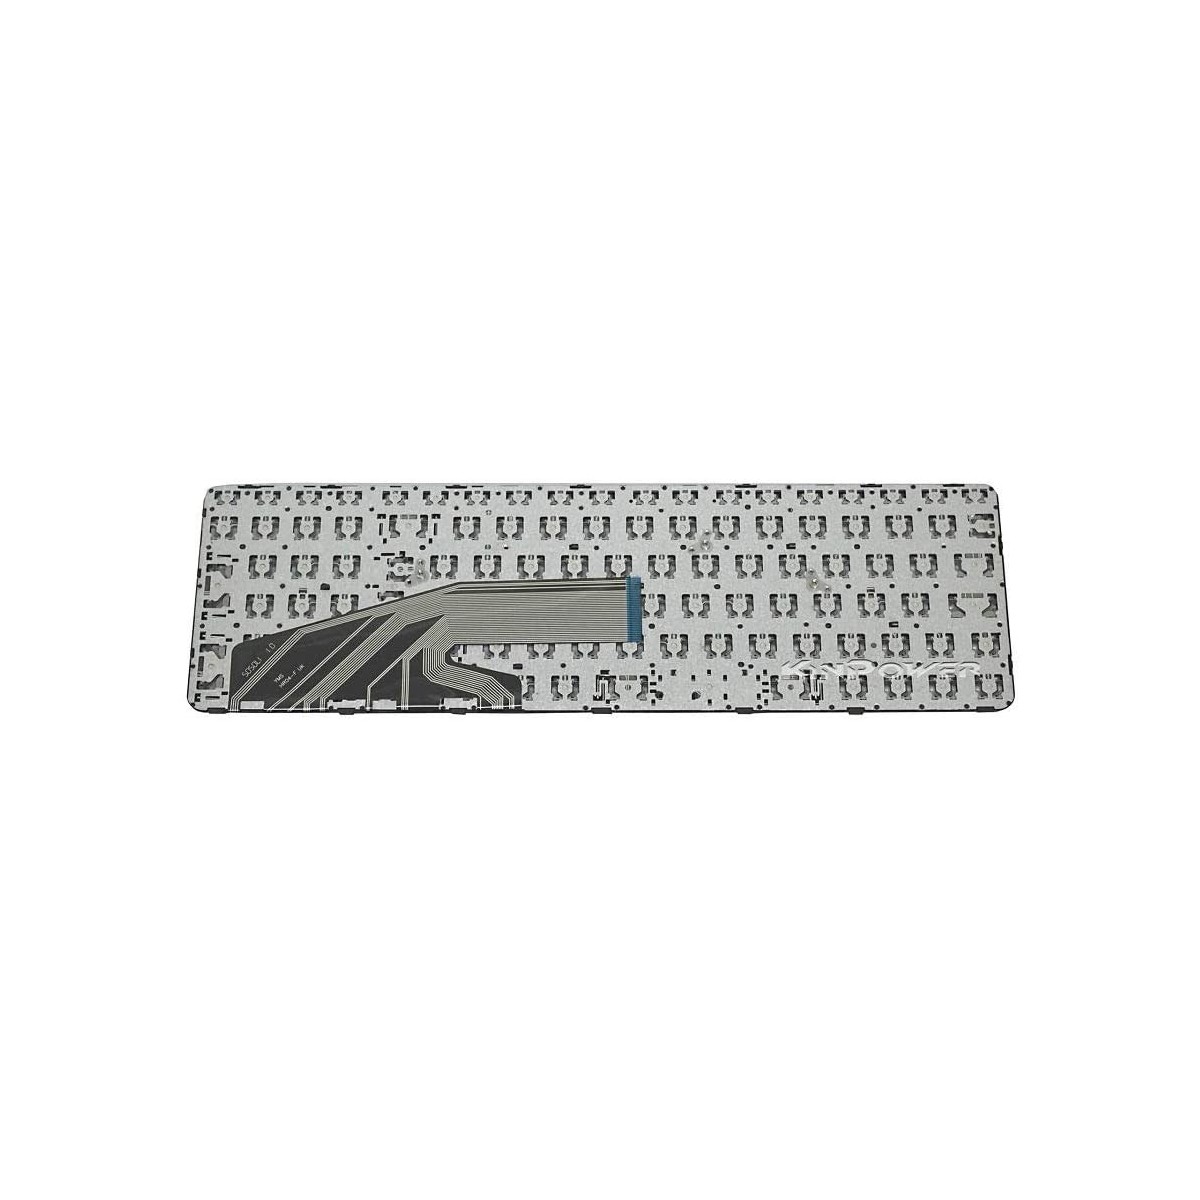 Clavier Français compatible Pour HP ProBook 450 G4 SERIES 6037B0113901